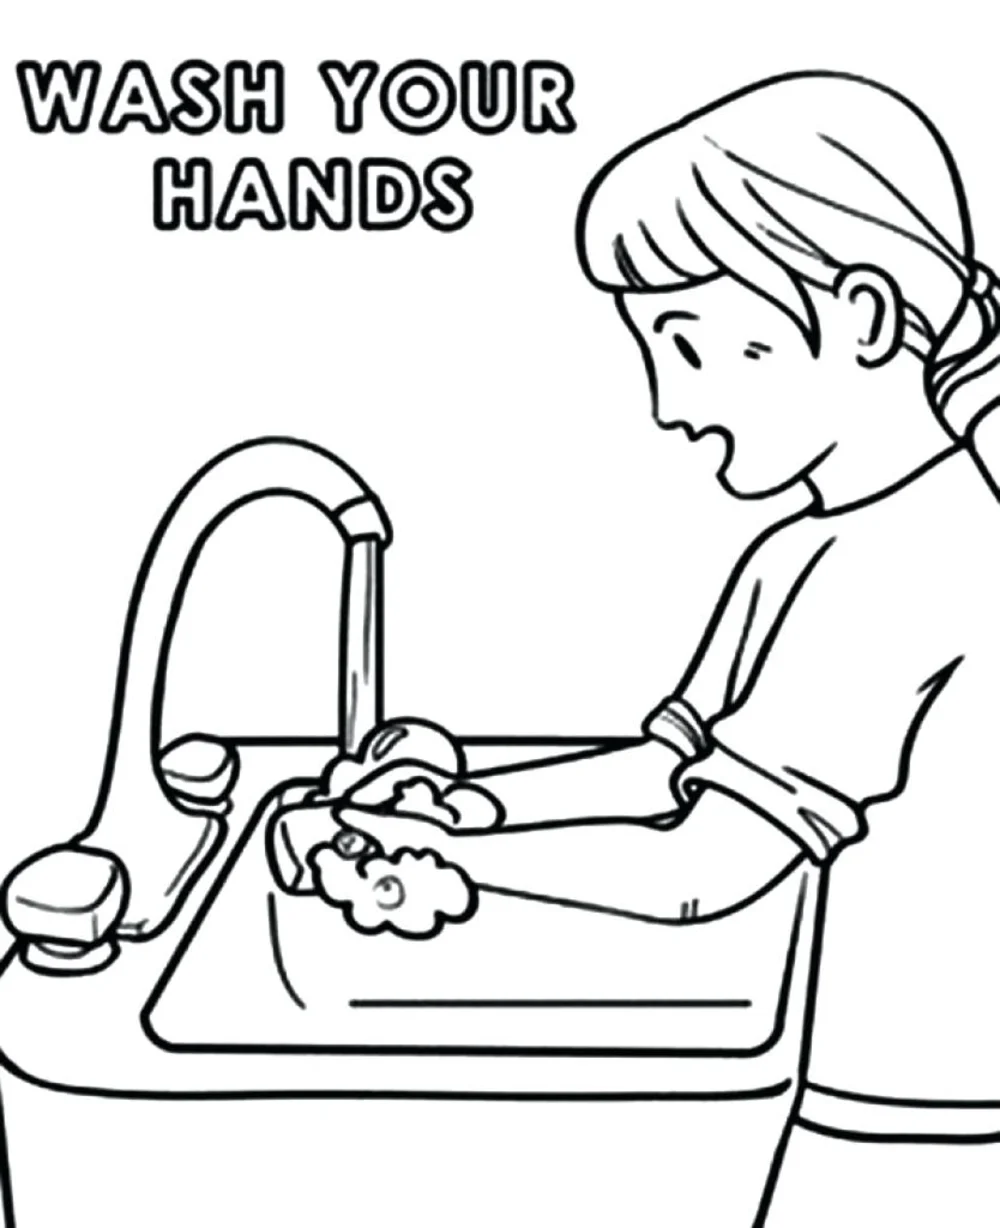 mycie rąk, mydło, higiena